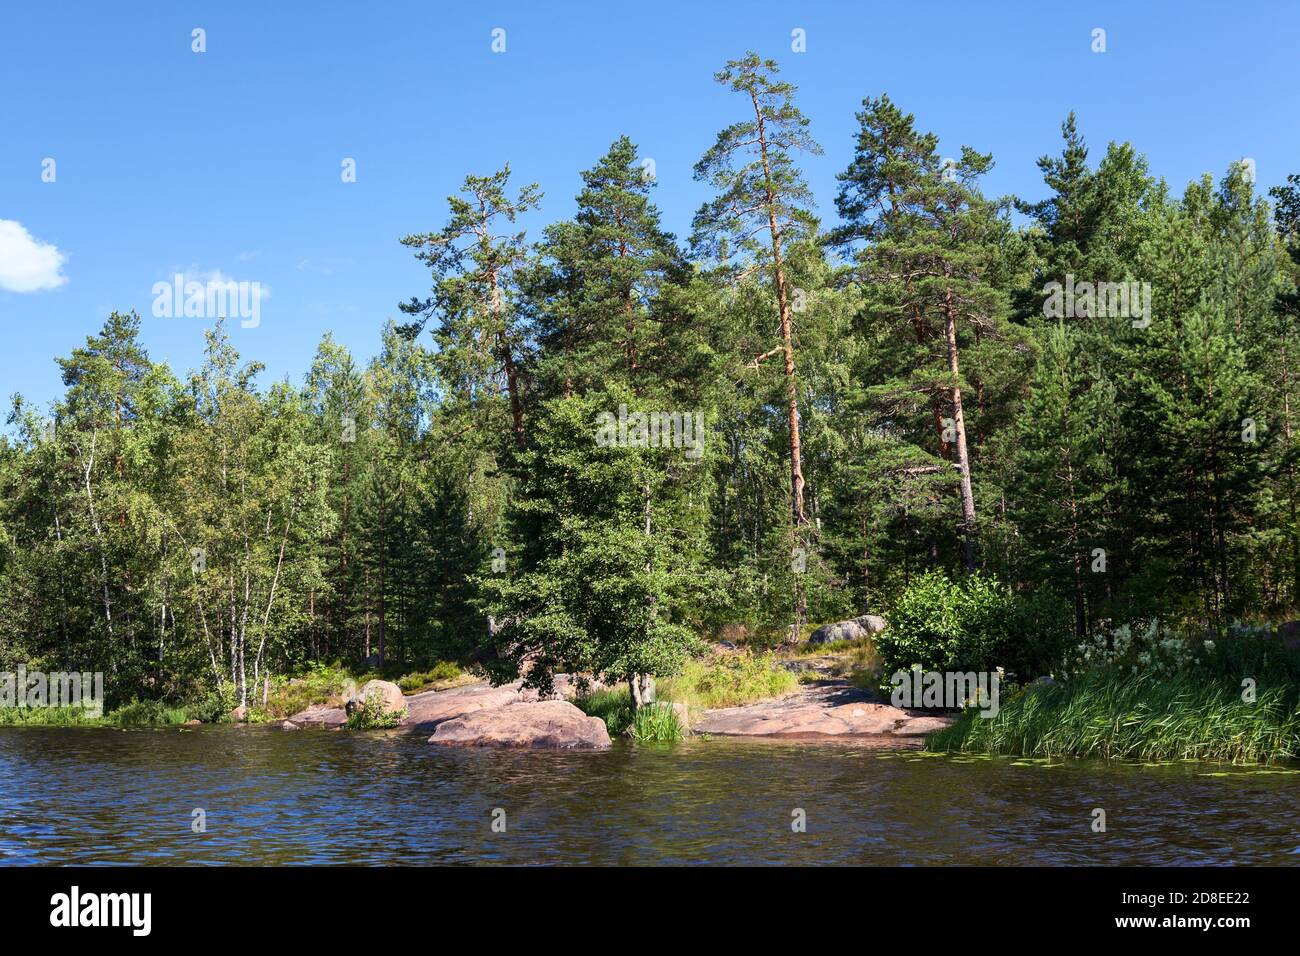 Süd-Karelien-See, russische wilde Natur. Steinfelsenufer eines Waldsees. Skandinavische Landschaft. Russland. Horizontales Bild Stockfoto